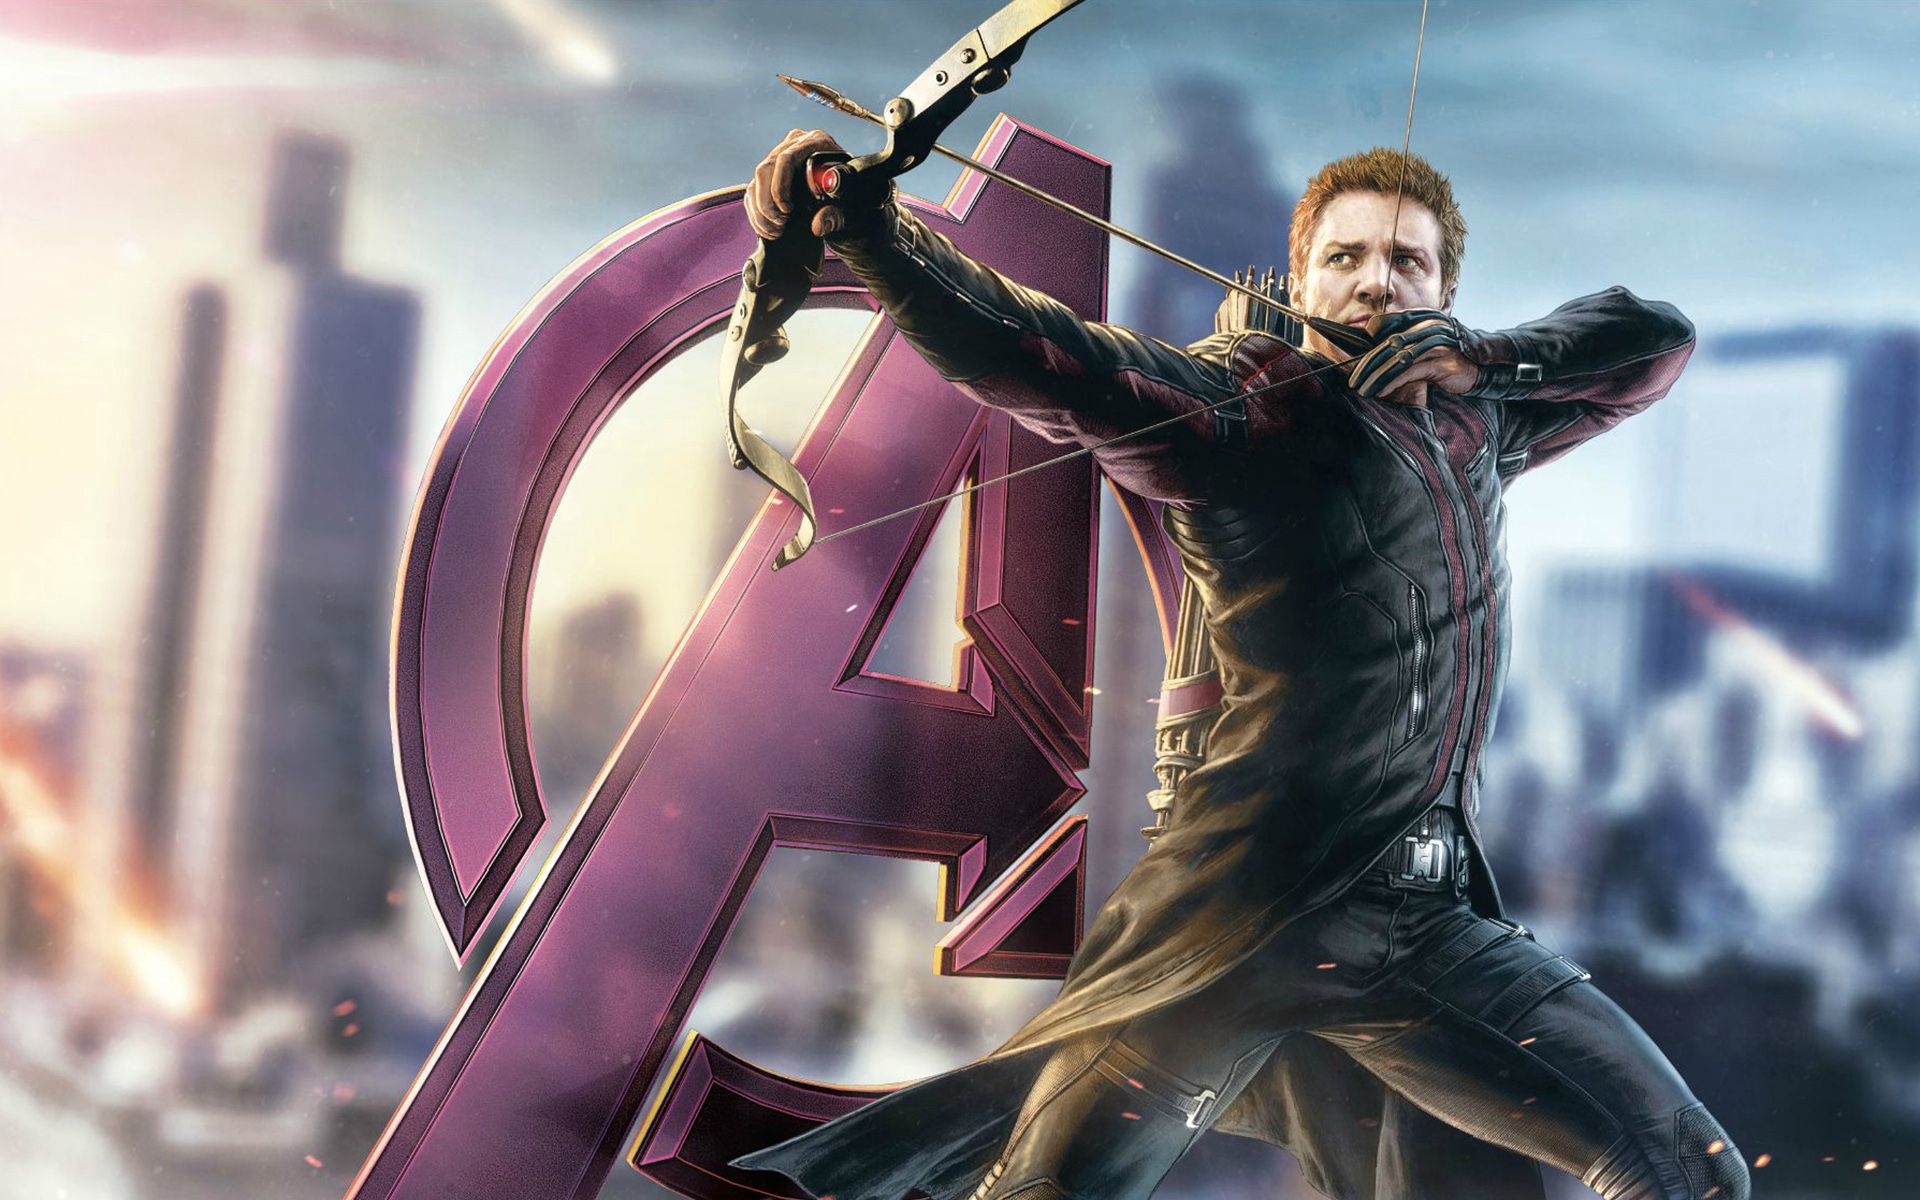 Avengers Hawkeye wallpaper